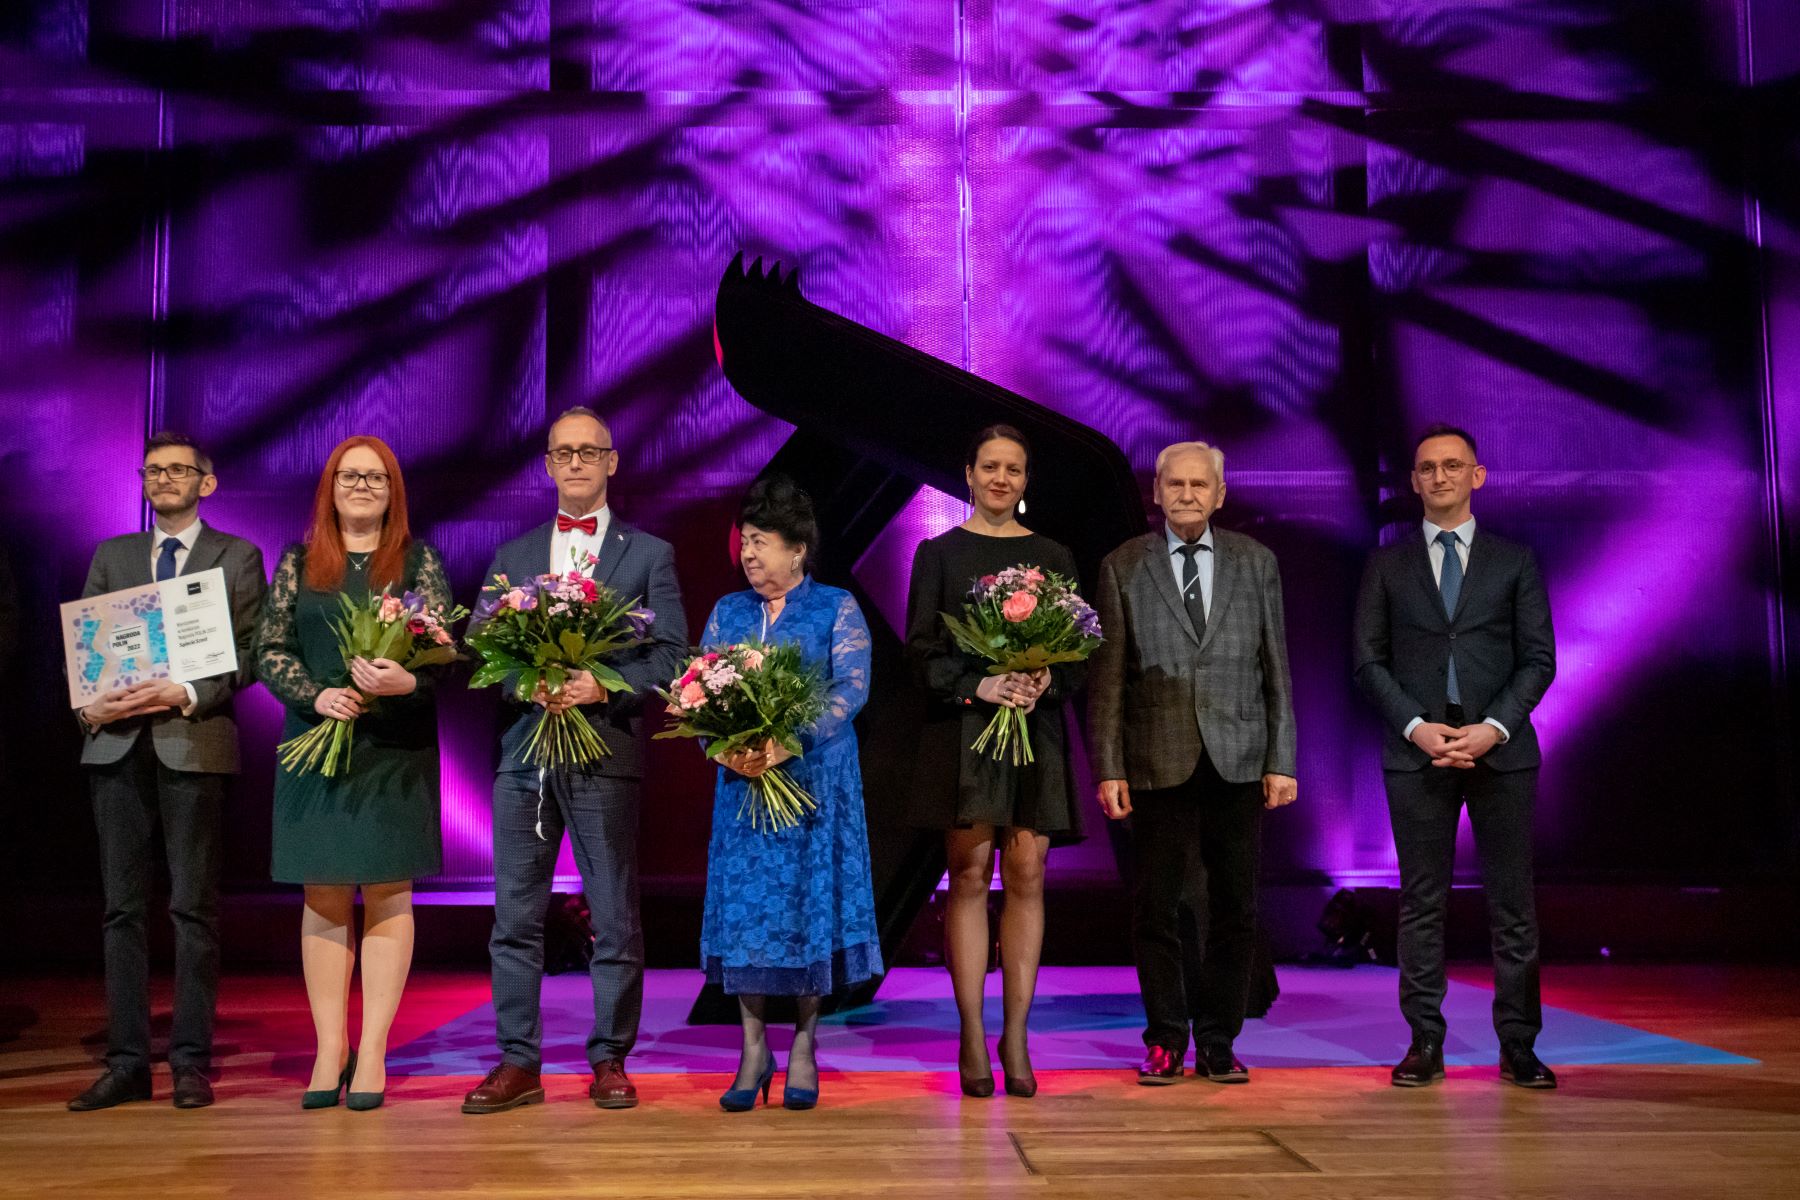 Przedstawiciele Sądeckiego Sztetla odbierają wyróżnienie podczas gali Nagroda POLIN 2022. Stoją na scenie w audytorium.